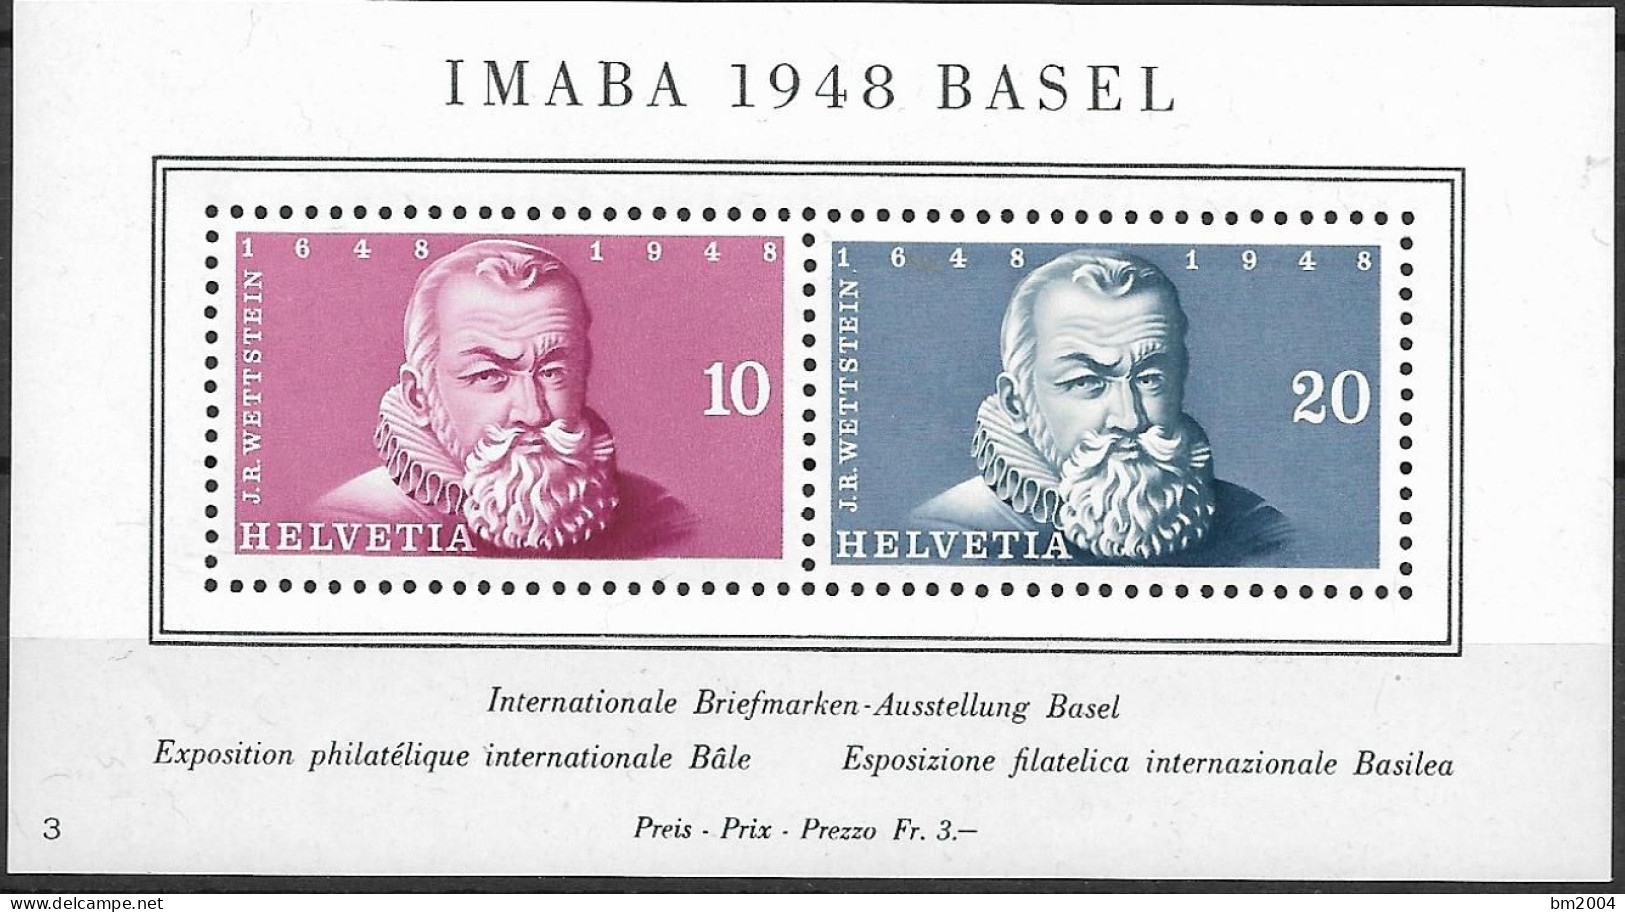 1948 Schweiz Mi. Bl. 13**MNH Internationale Briefmarkenausstellung IMABA 1948, Basel. - Unused Stamps